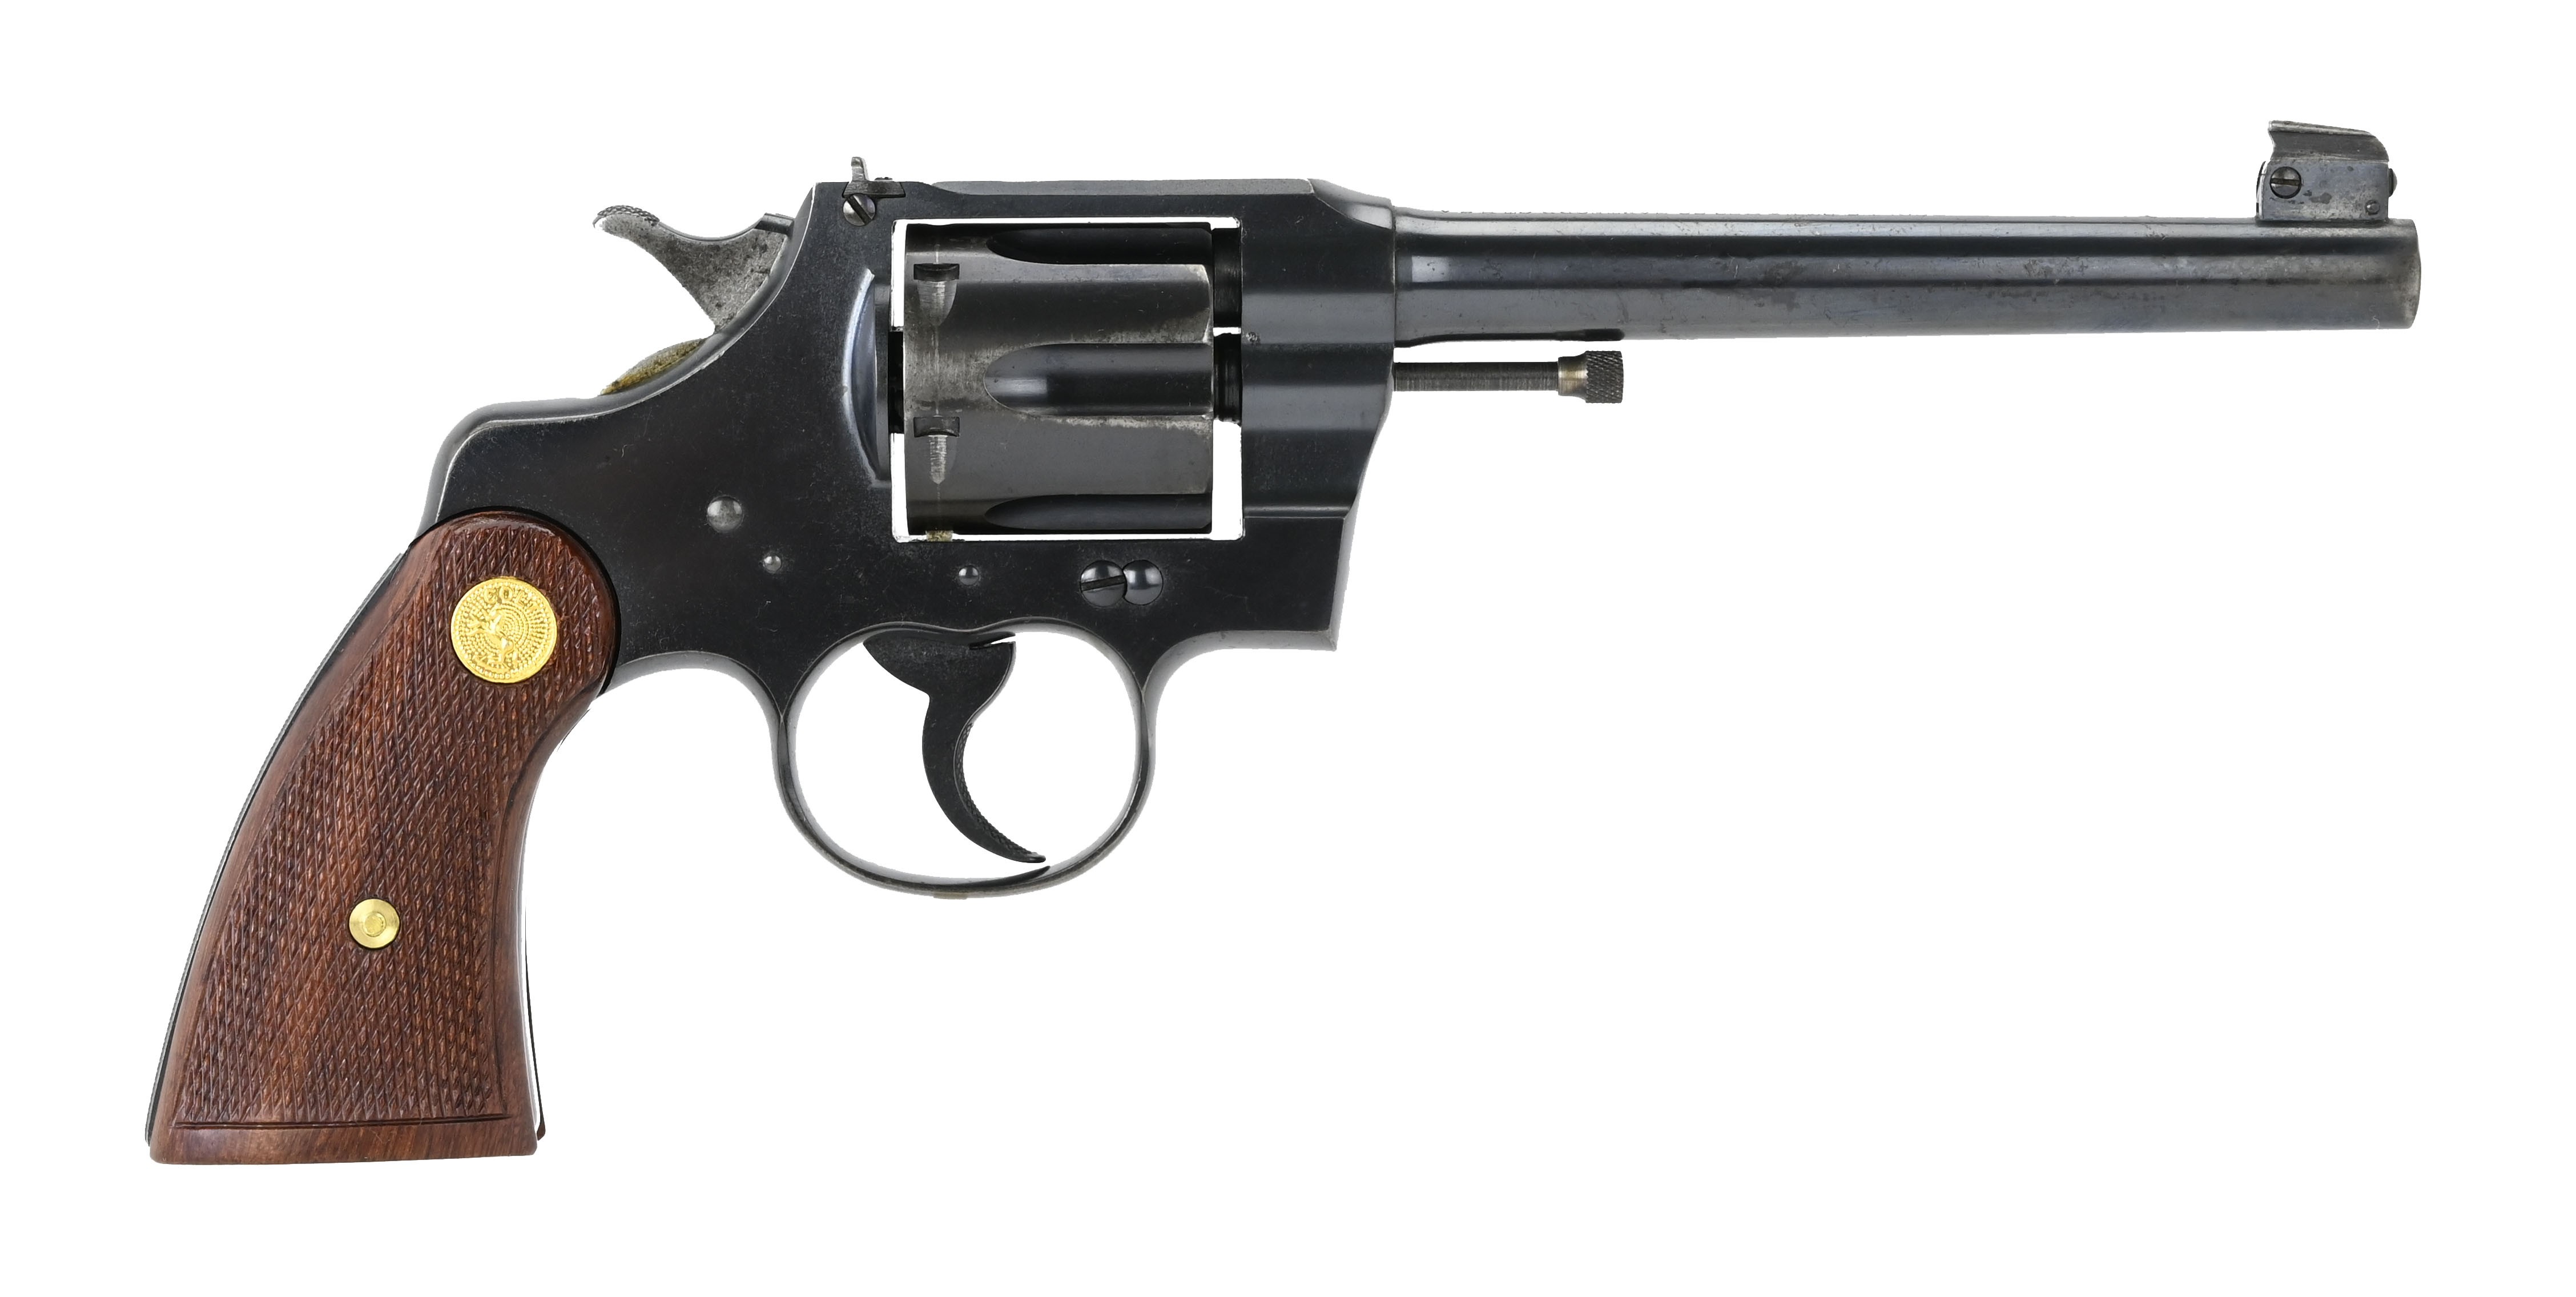 Colt Officers Model .38 Special caliber revolver for sale.